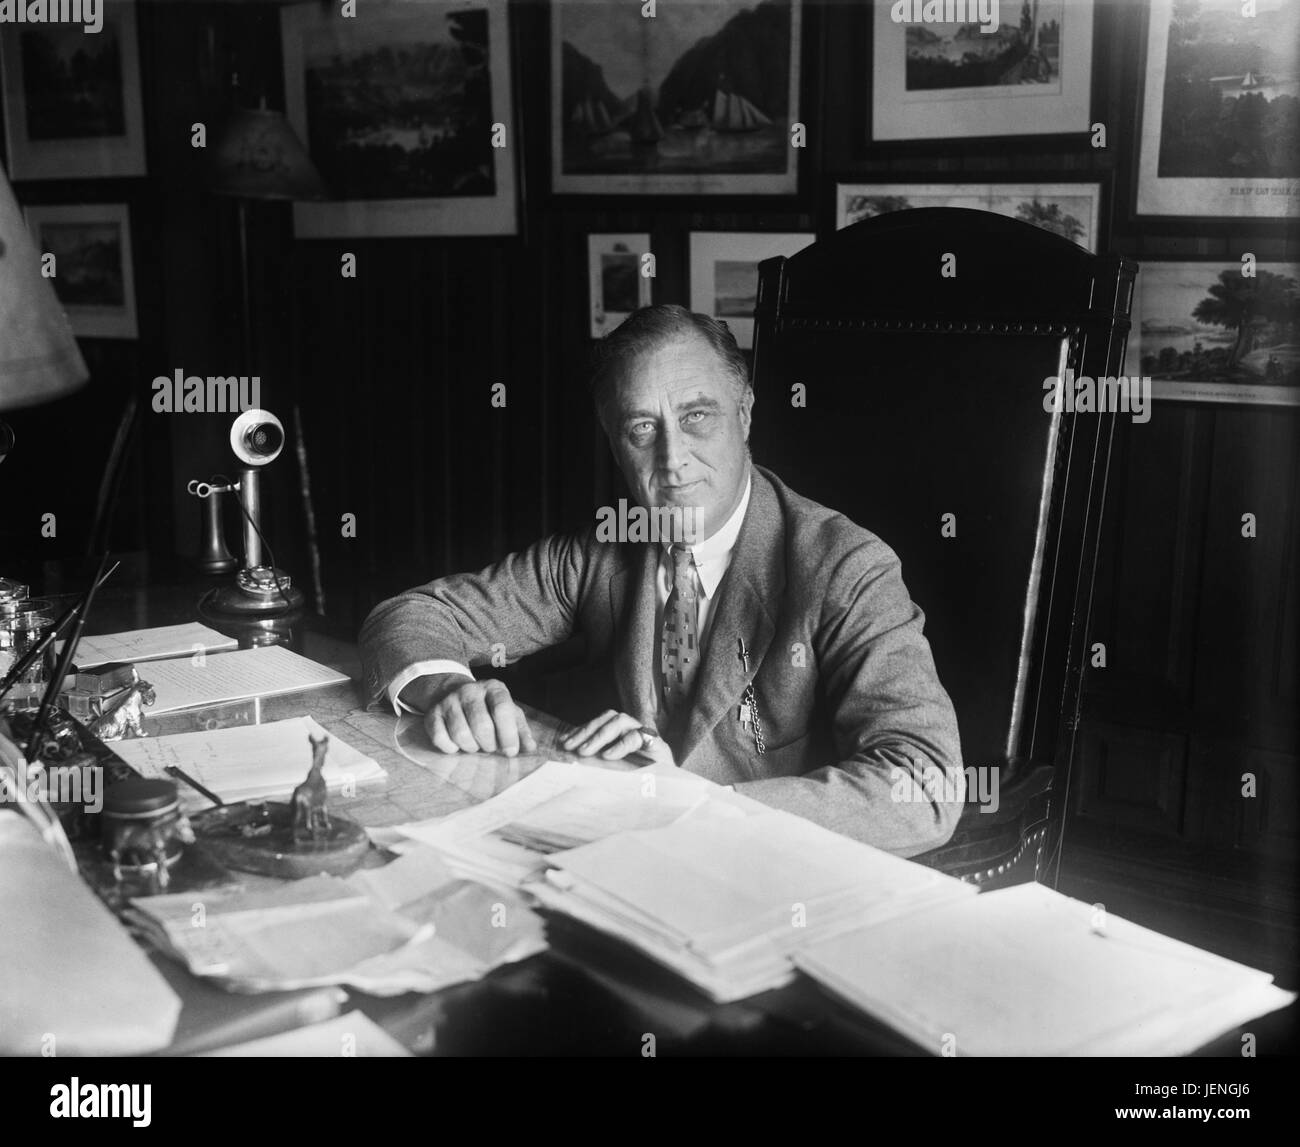 Il governatore di New York Franklin Roosevelt, ritratto alla scrivania, Albany, New York, USA, Harris & Ewing, 1932 Foto Stock